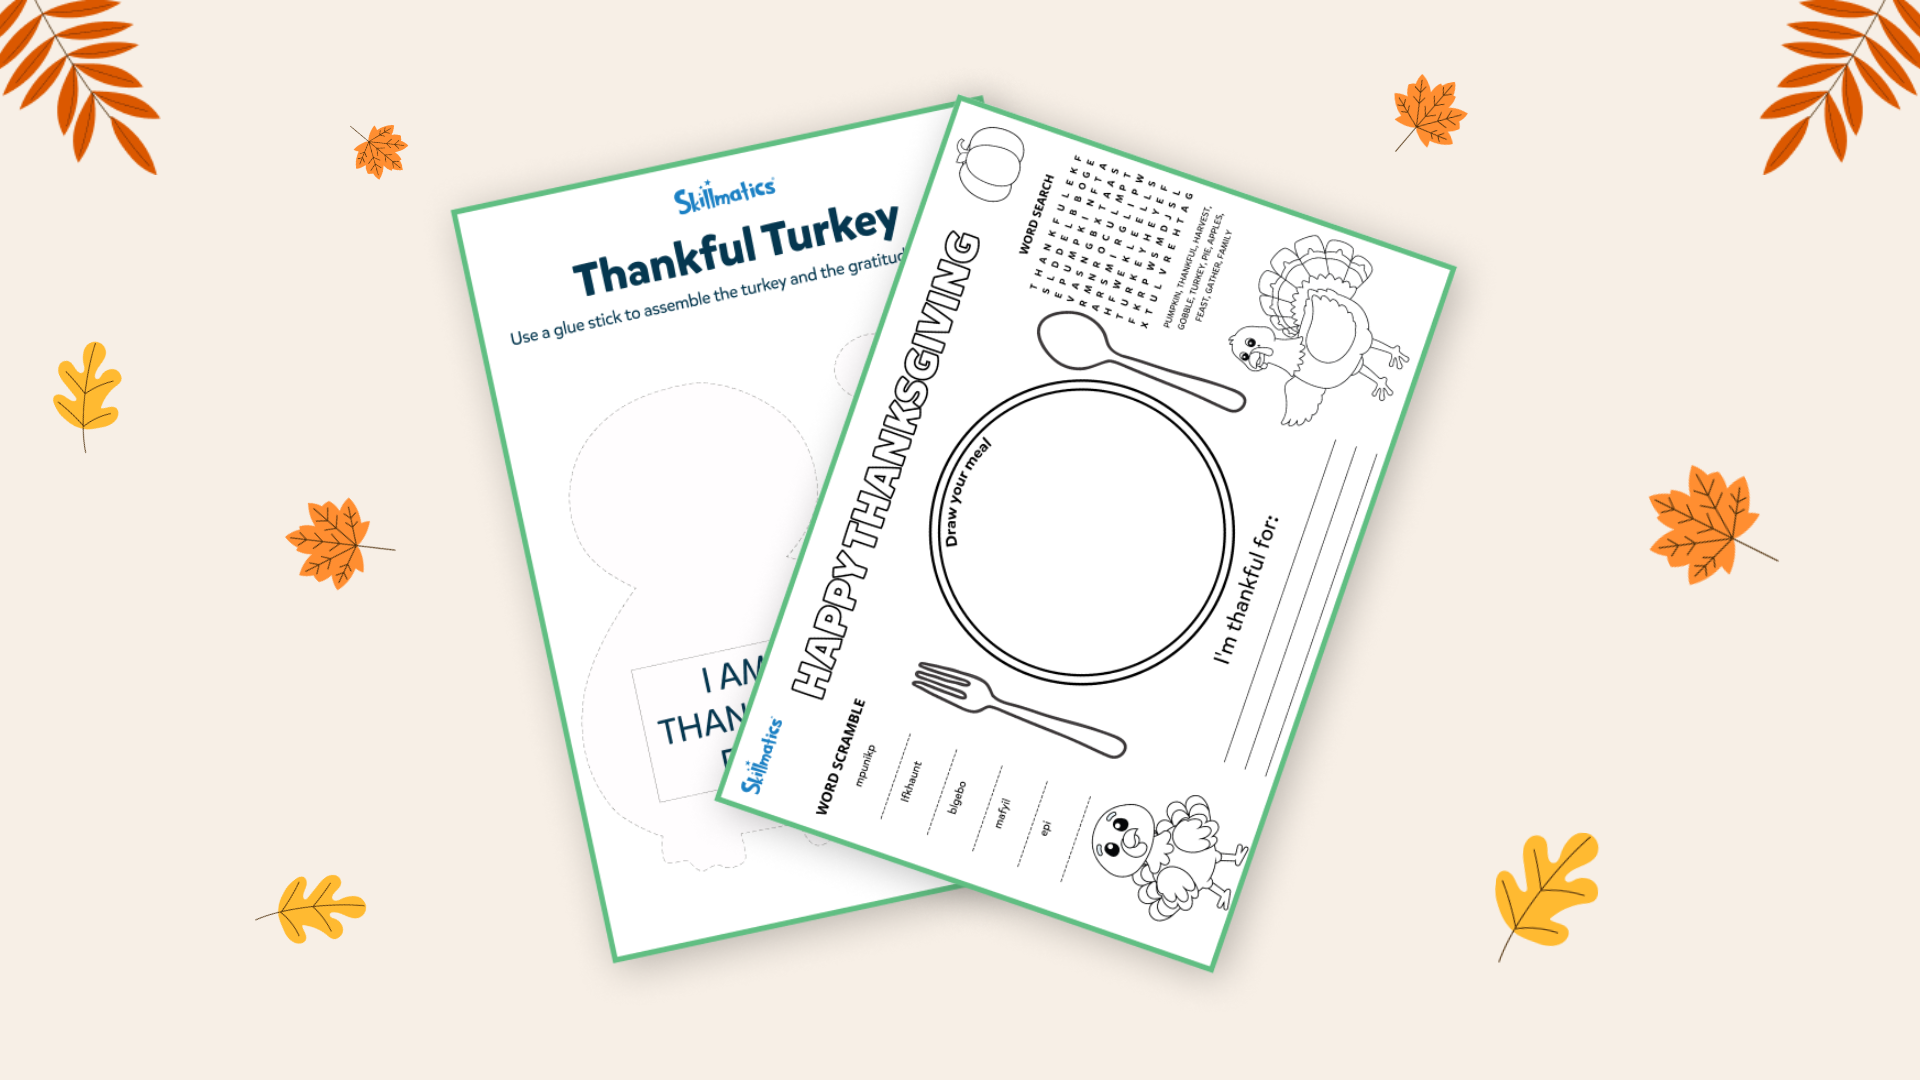 Download free printable - Thanksgiving